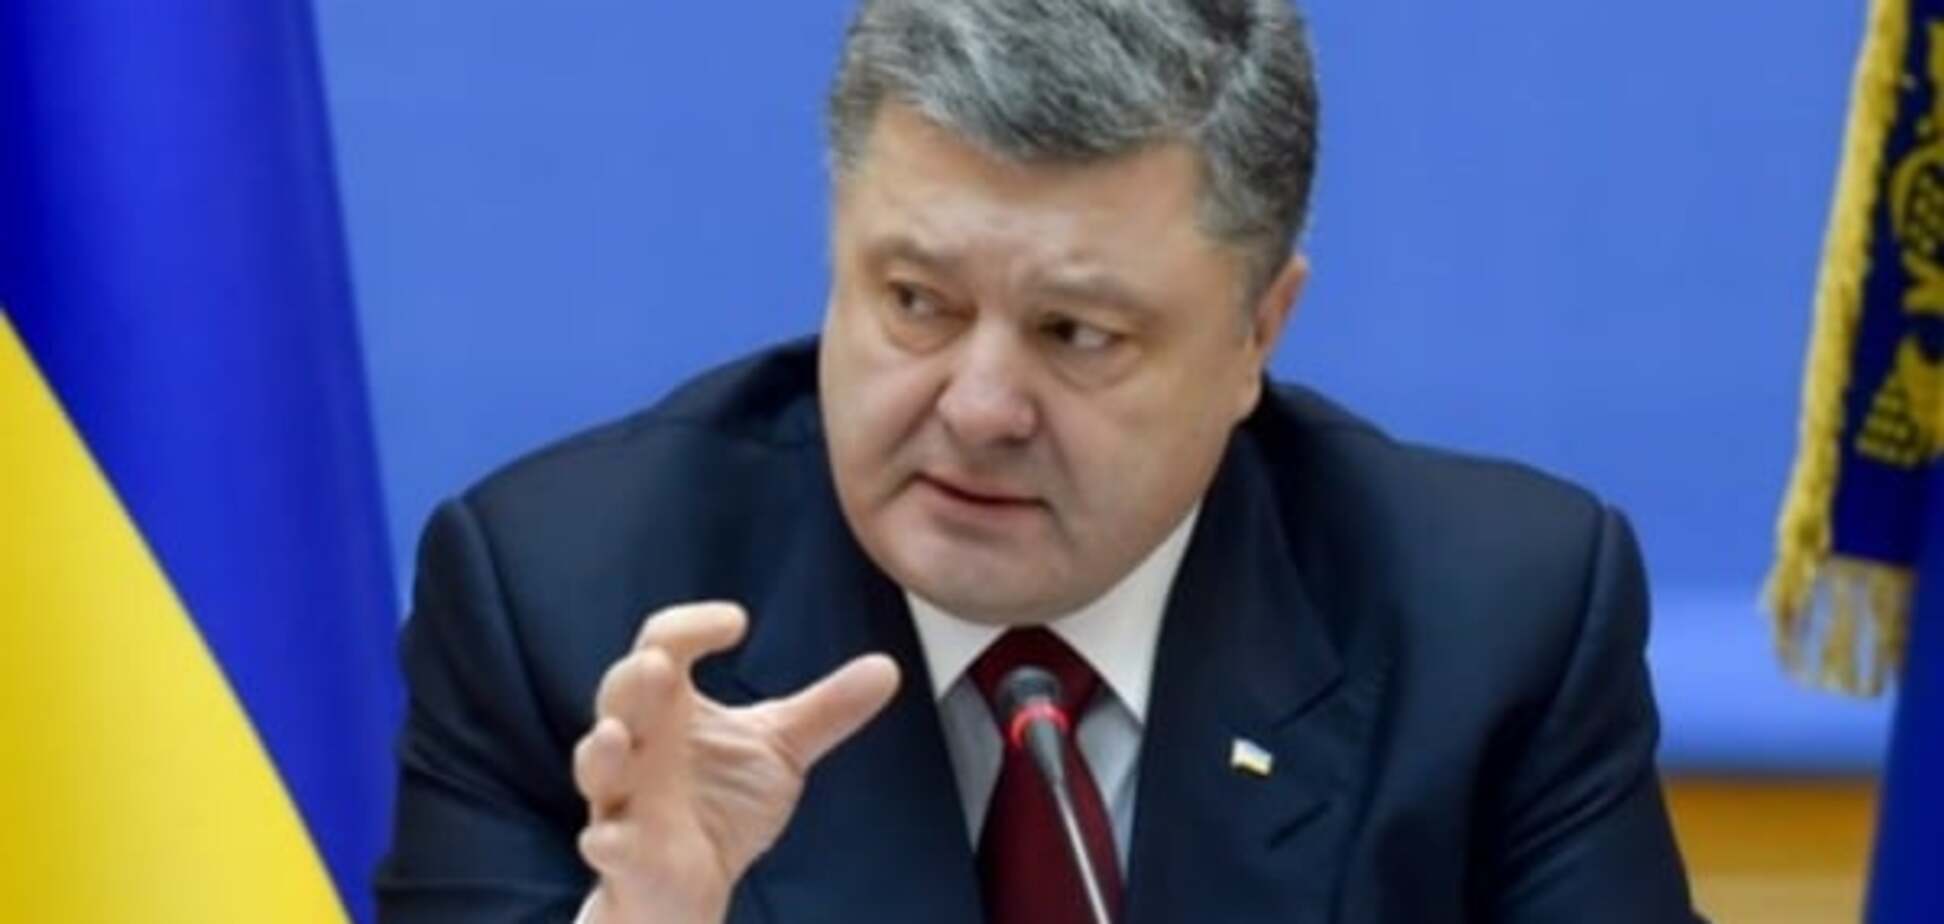 Порошенко домовився про повне припинення вогню на Донбасі та погодив дату повернення Савченко - Рахманін